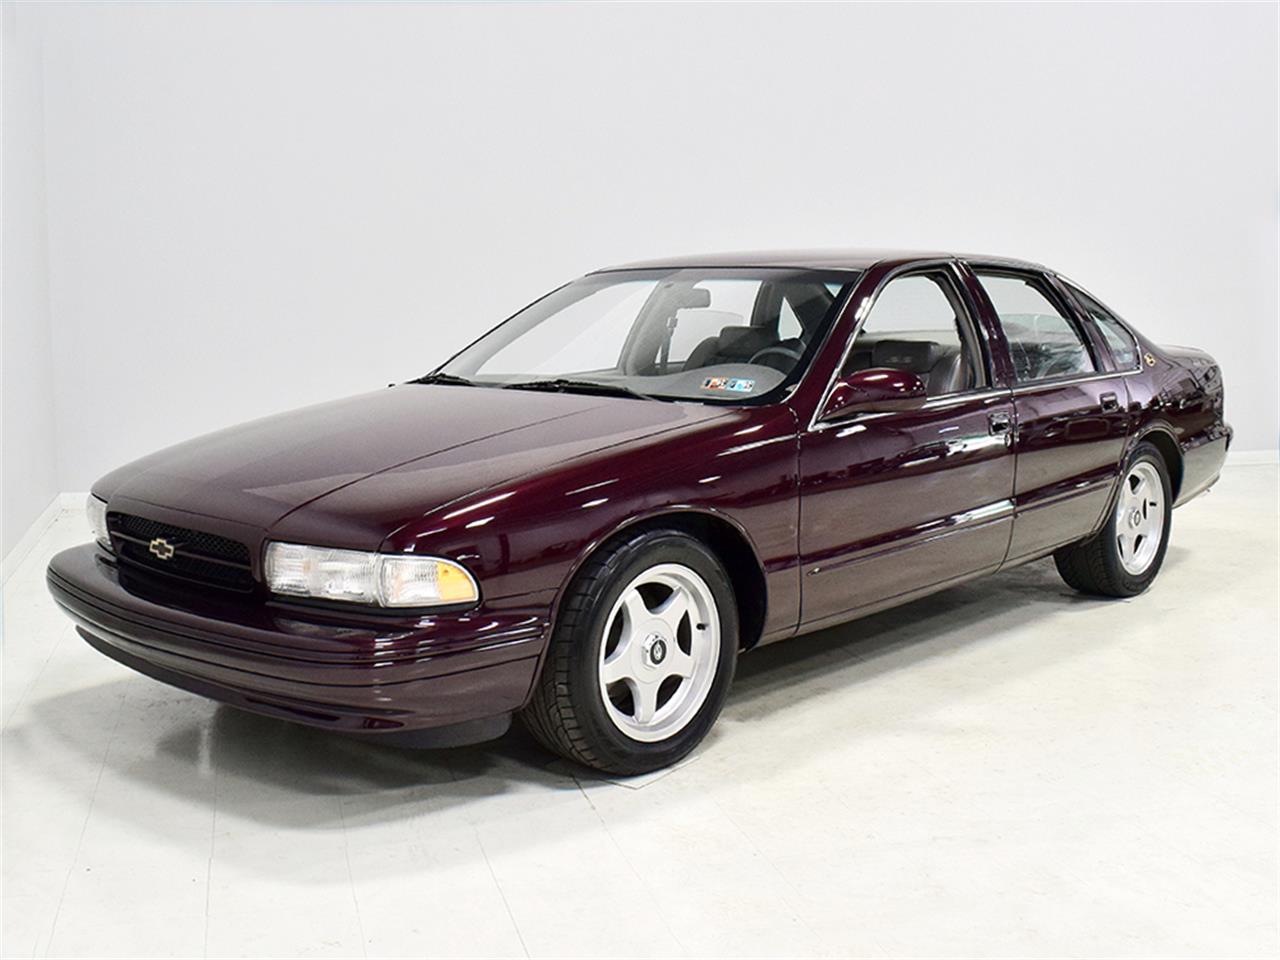 1995 Chevrolet Impala Ss For Sale Classiccars Com Cc 1261731